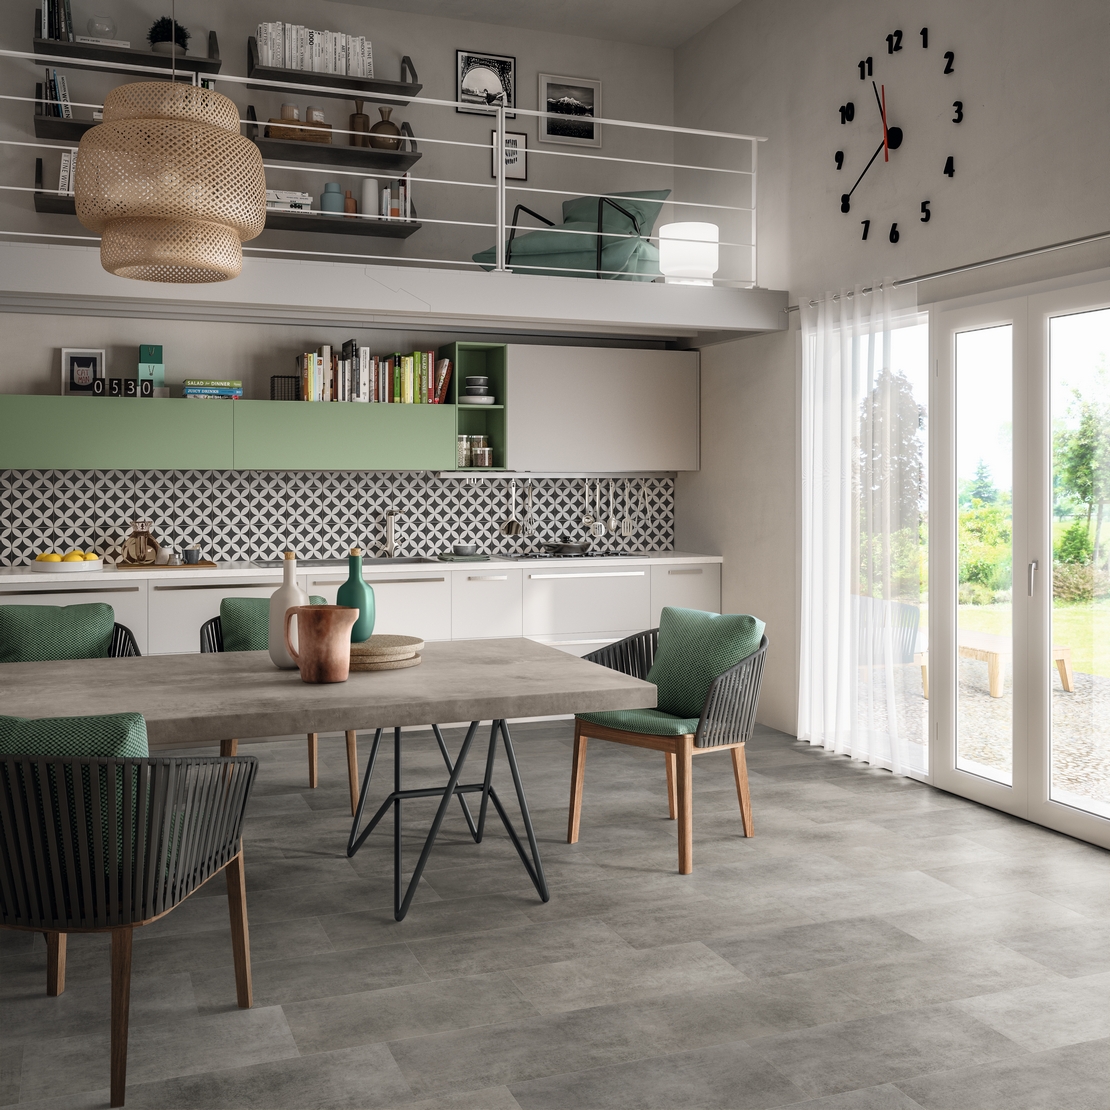 Moderne lineare offene Küche: Betoneffekt und Grüntöne für einen industriellen Touch - Inspirationen Iperceramica